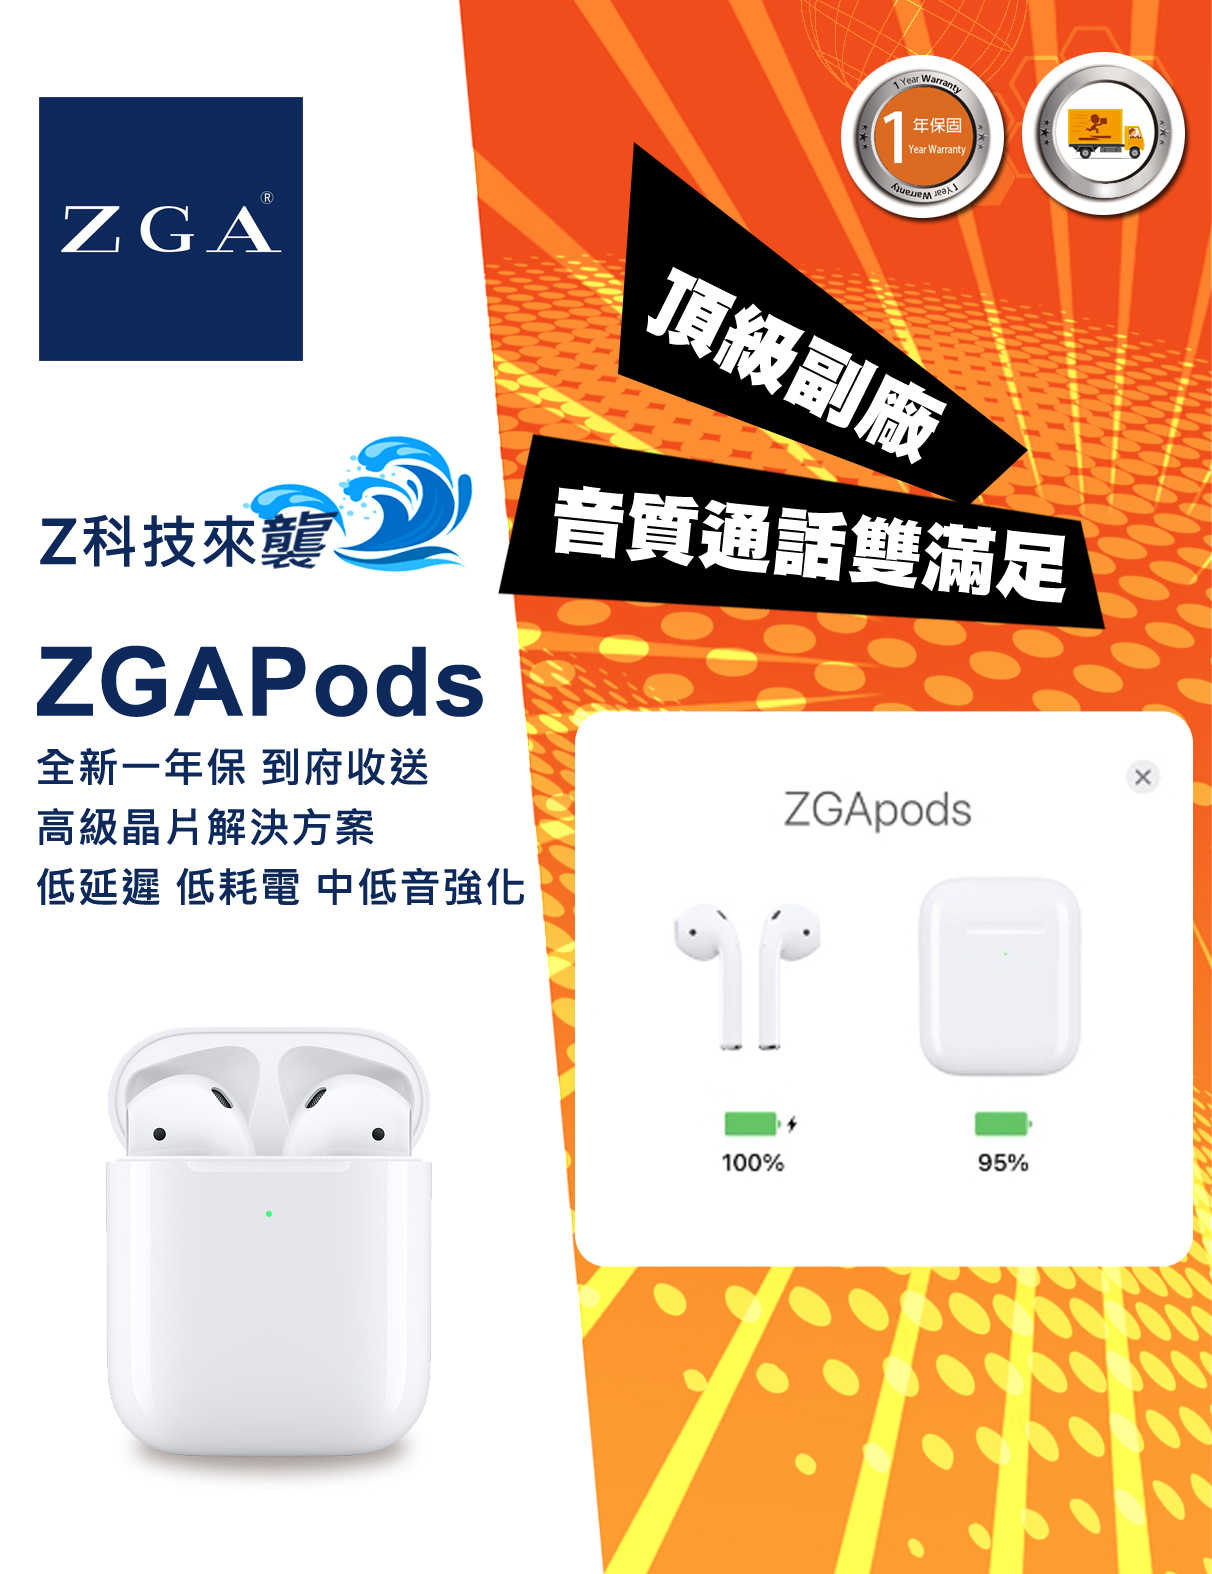 ZGA原廠 ZGAPods II 藍芽耳機 完美頂配 支援分期 享受無負擔 一年到府收送